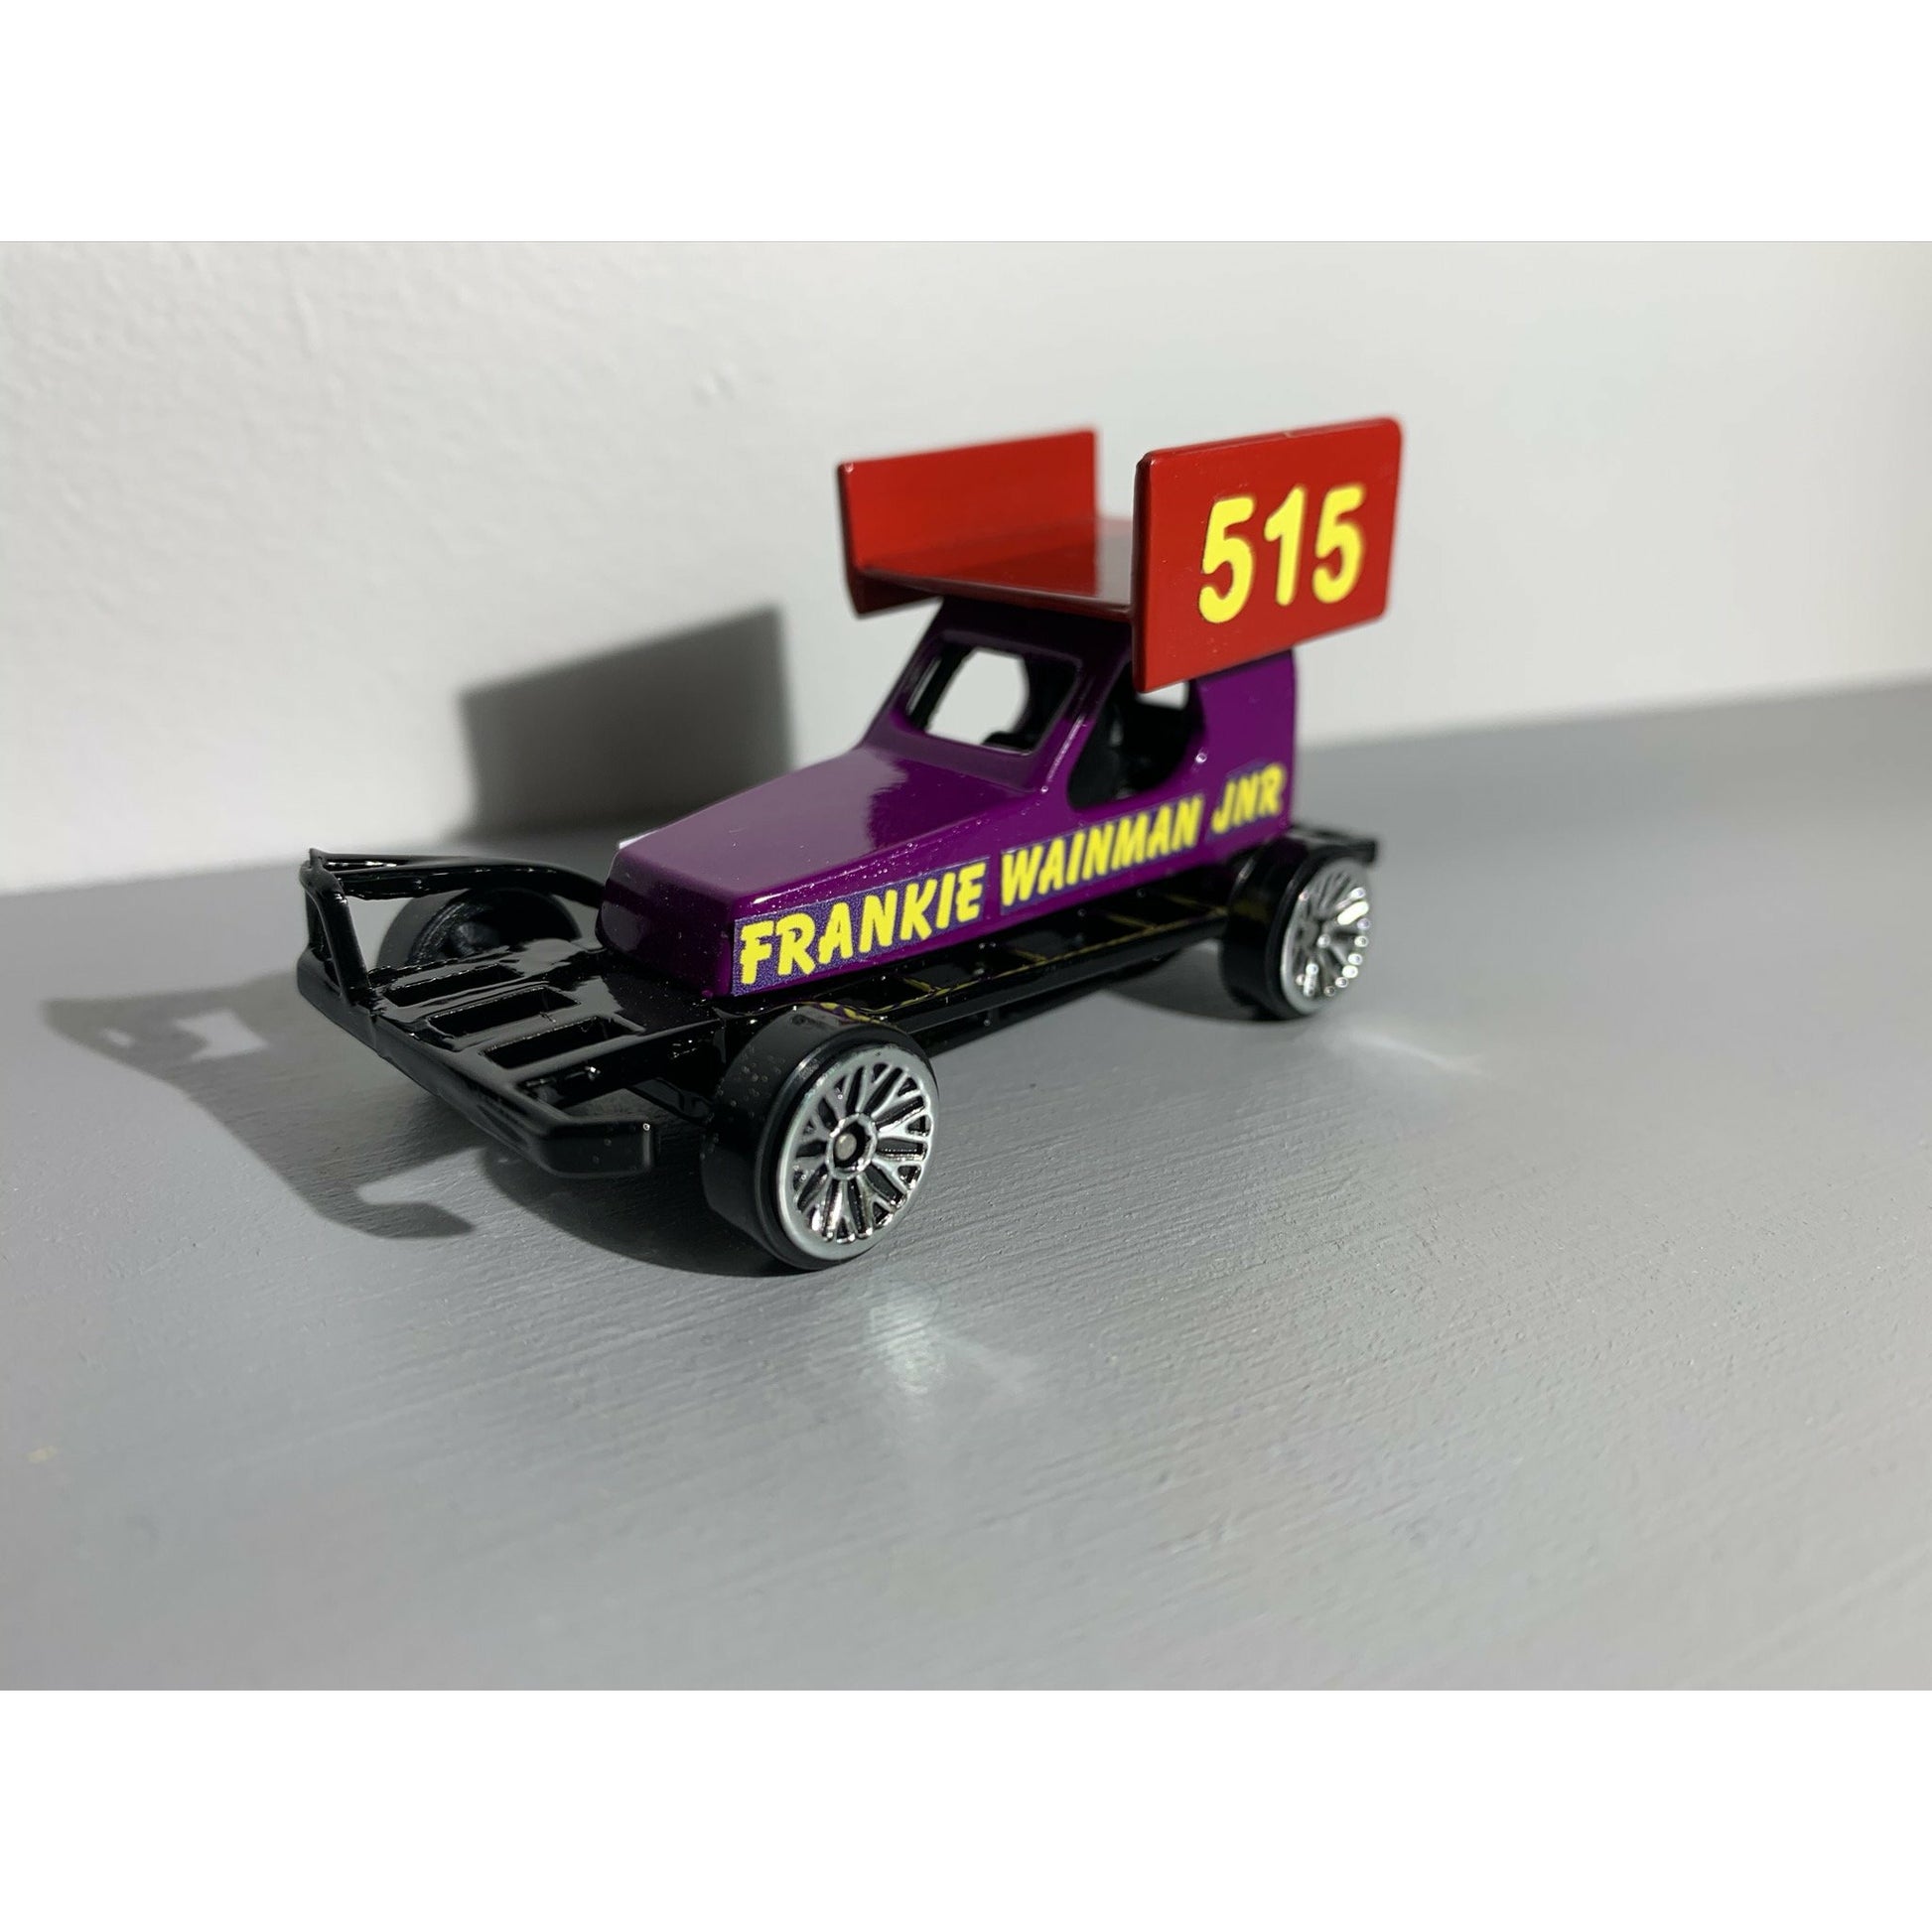 #515 Frankie Wainman Jnr - Stock Car & Banger Toy Tracks